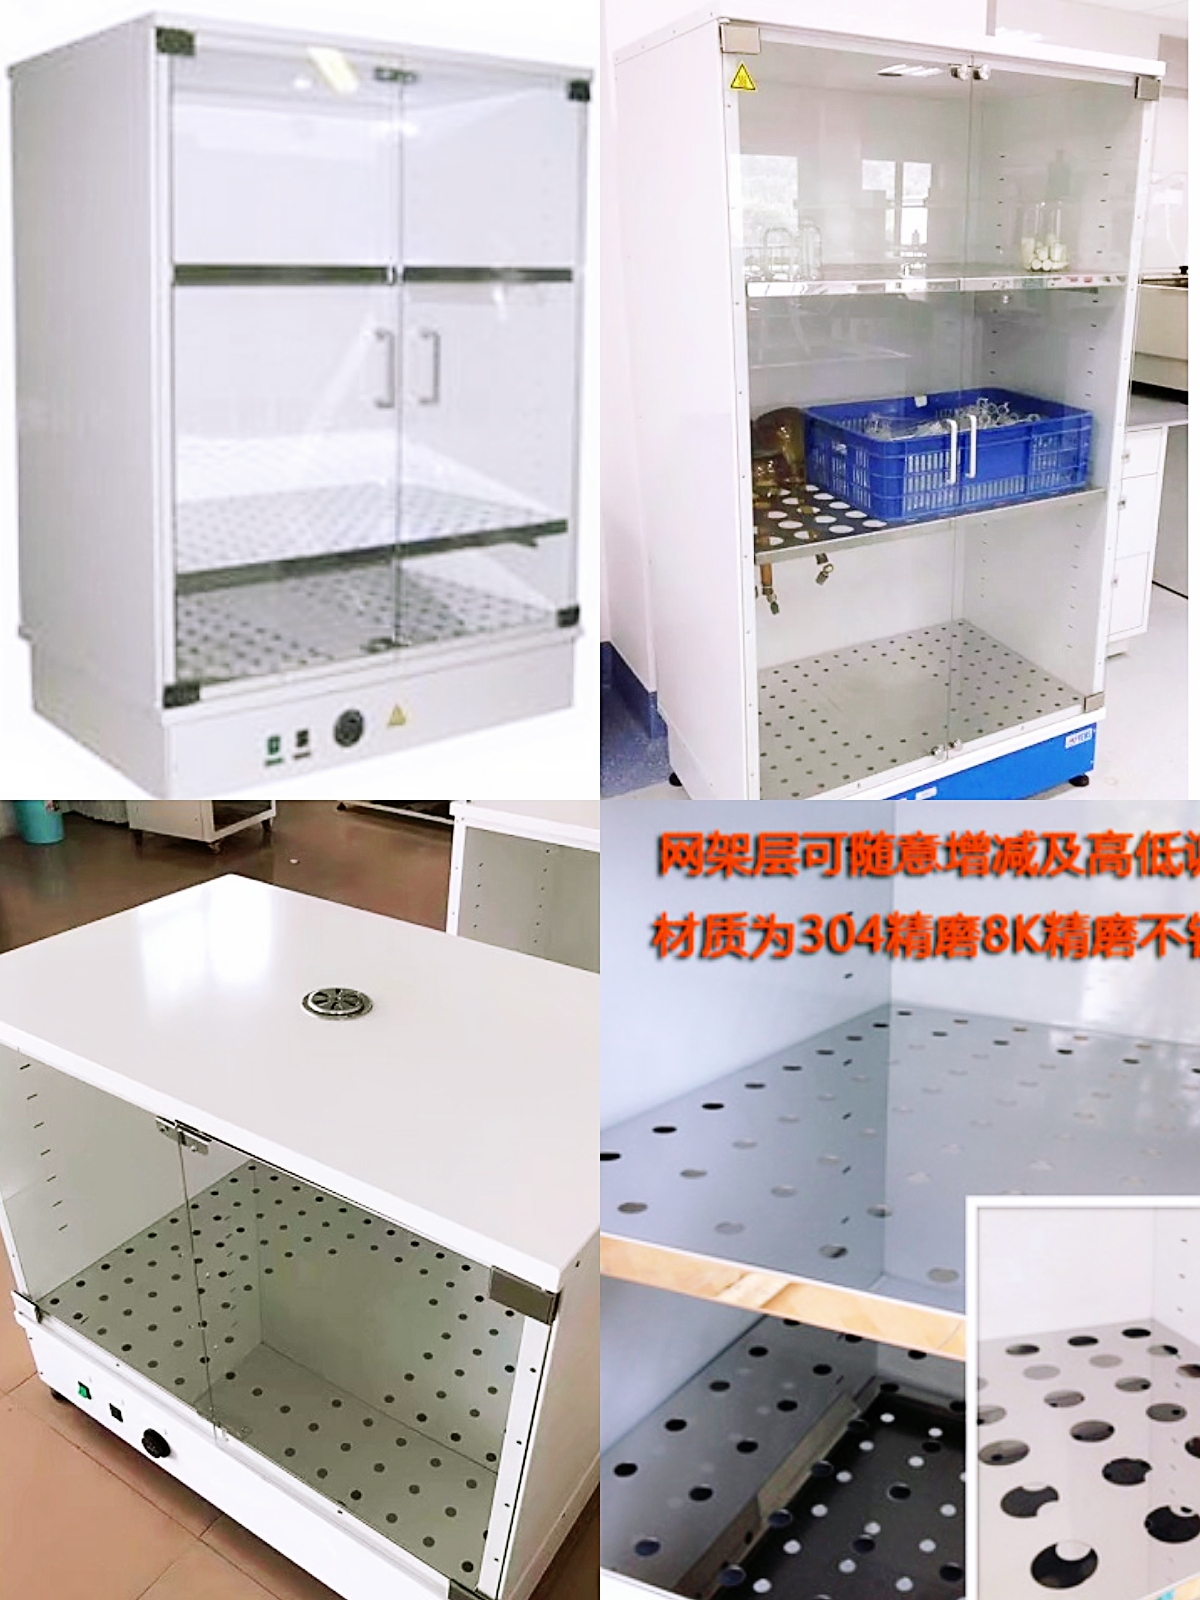 供应晋江玻璃器皿干燥机厂家直销 晋江玻璃器皿干燥箱性价比高